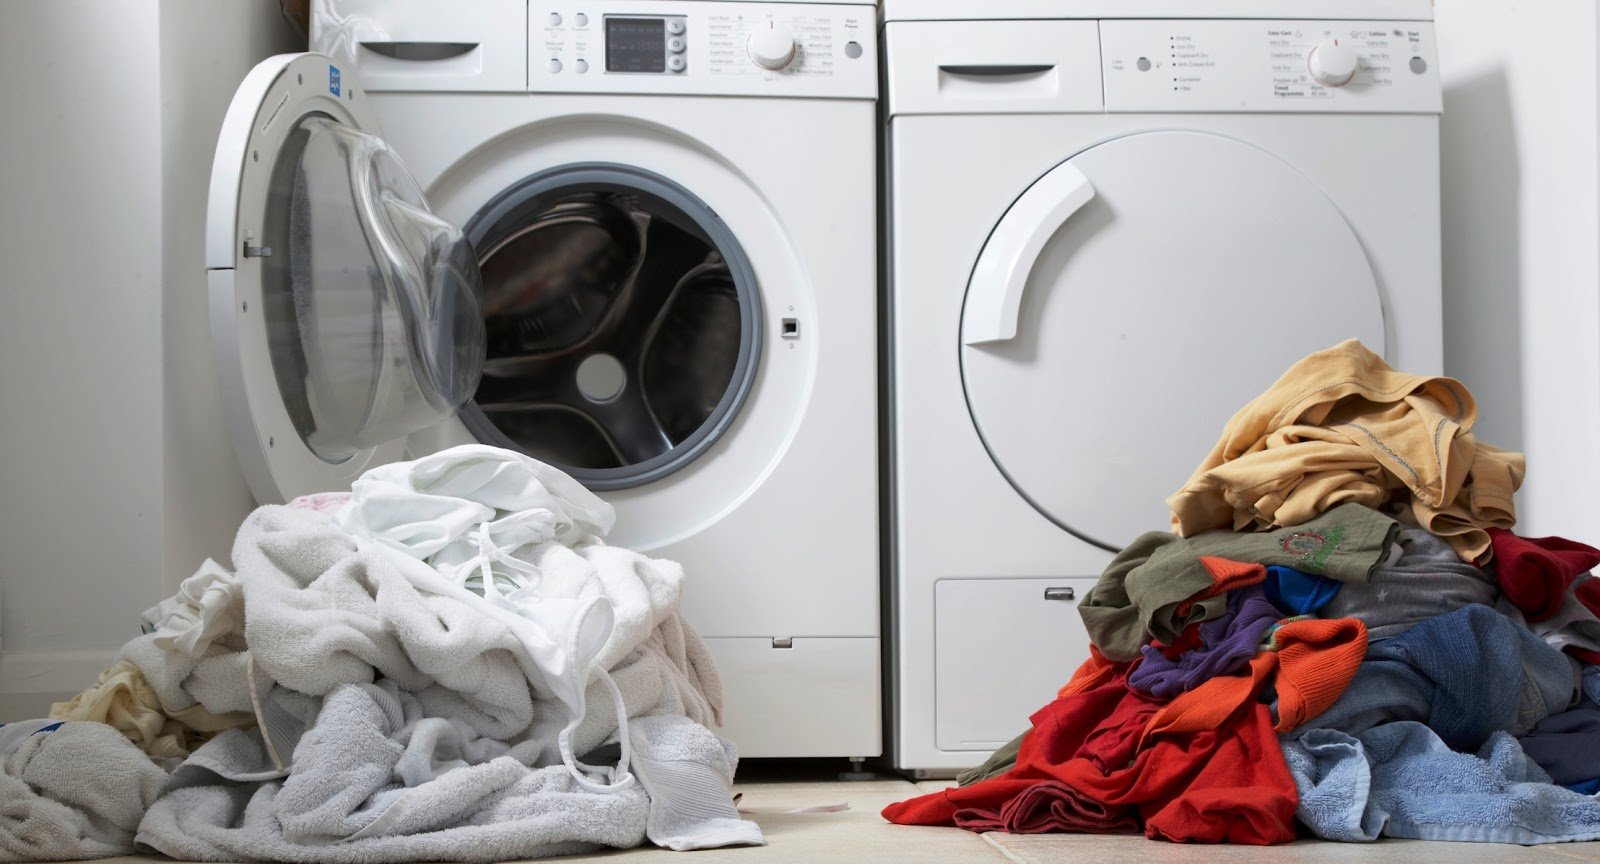 Quần áo nên được phân loại trước khi giặt (Ảnh minh họa)